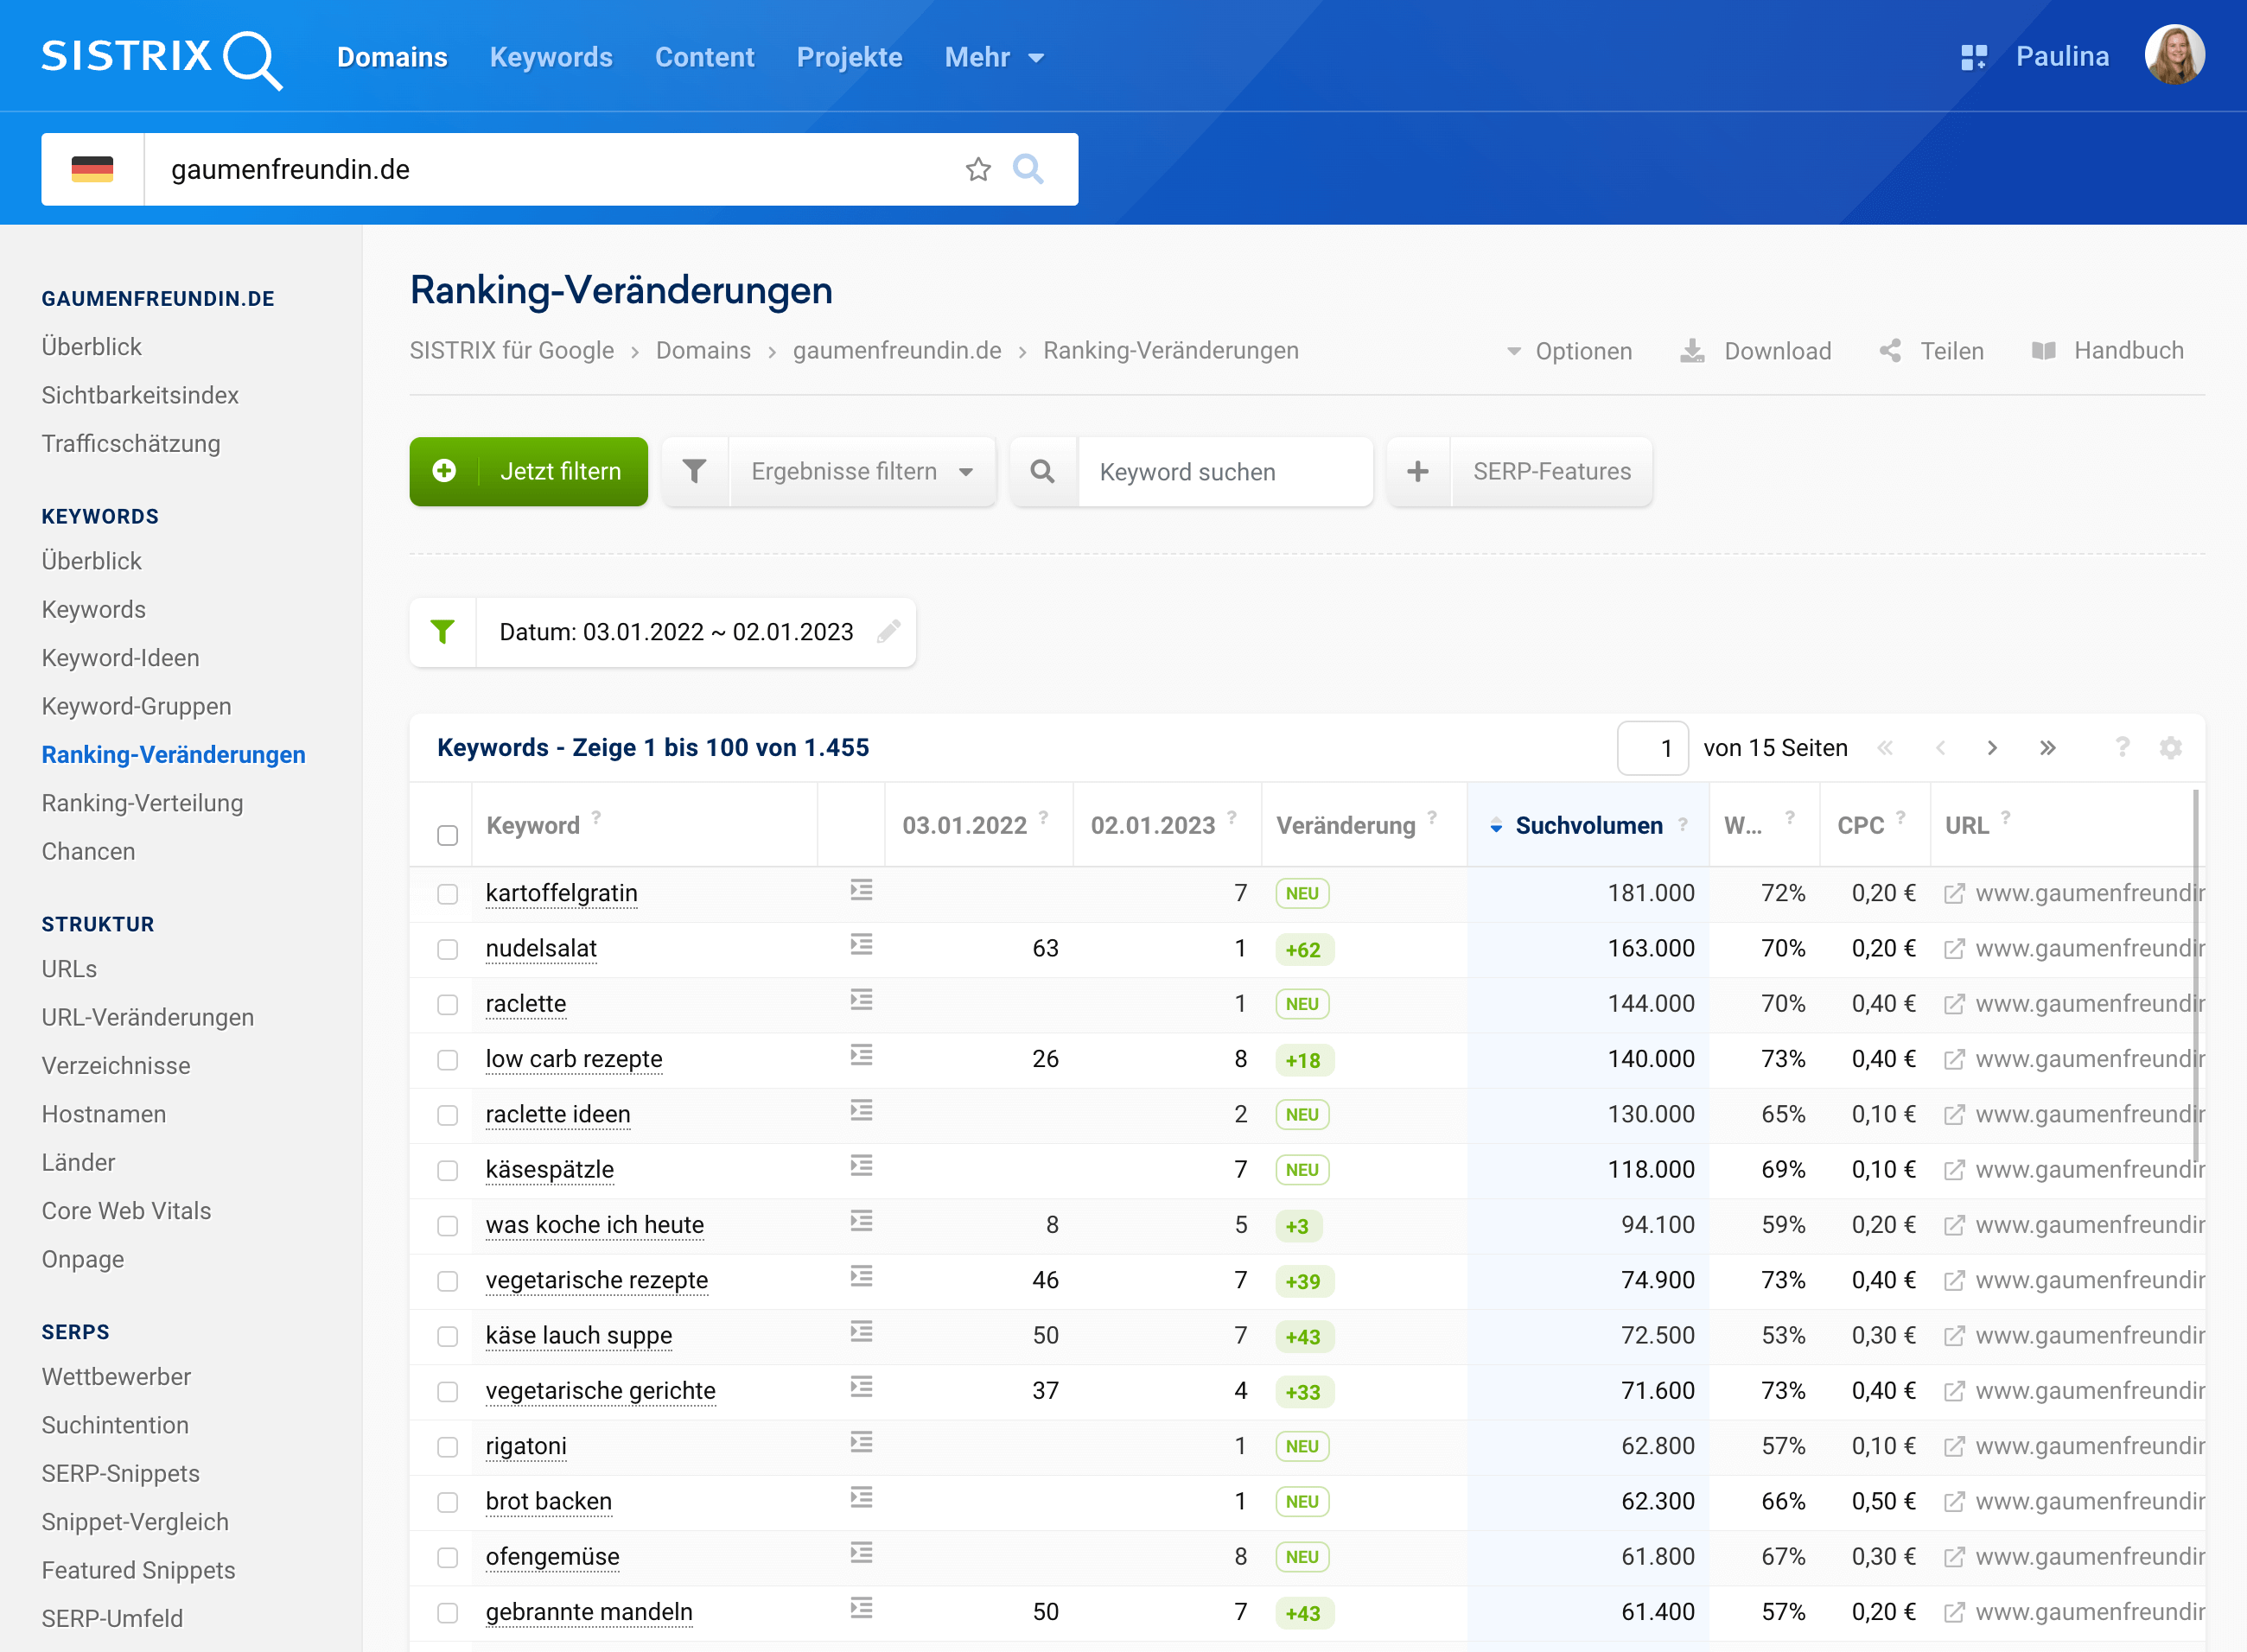 Eine Tabelle der gewonnenen und verbesserten Top10-Rankings der Domain gaumenfreundin.de in 2022.